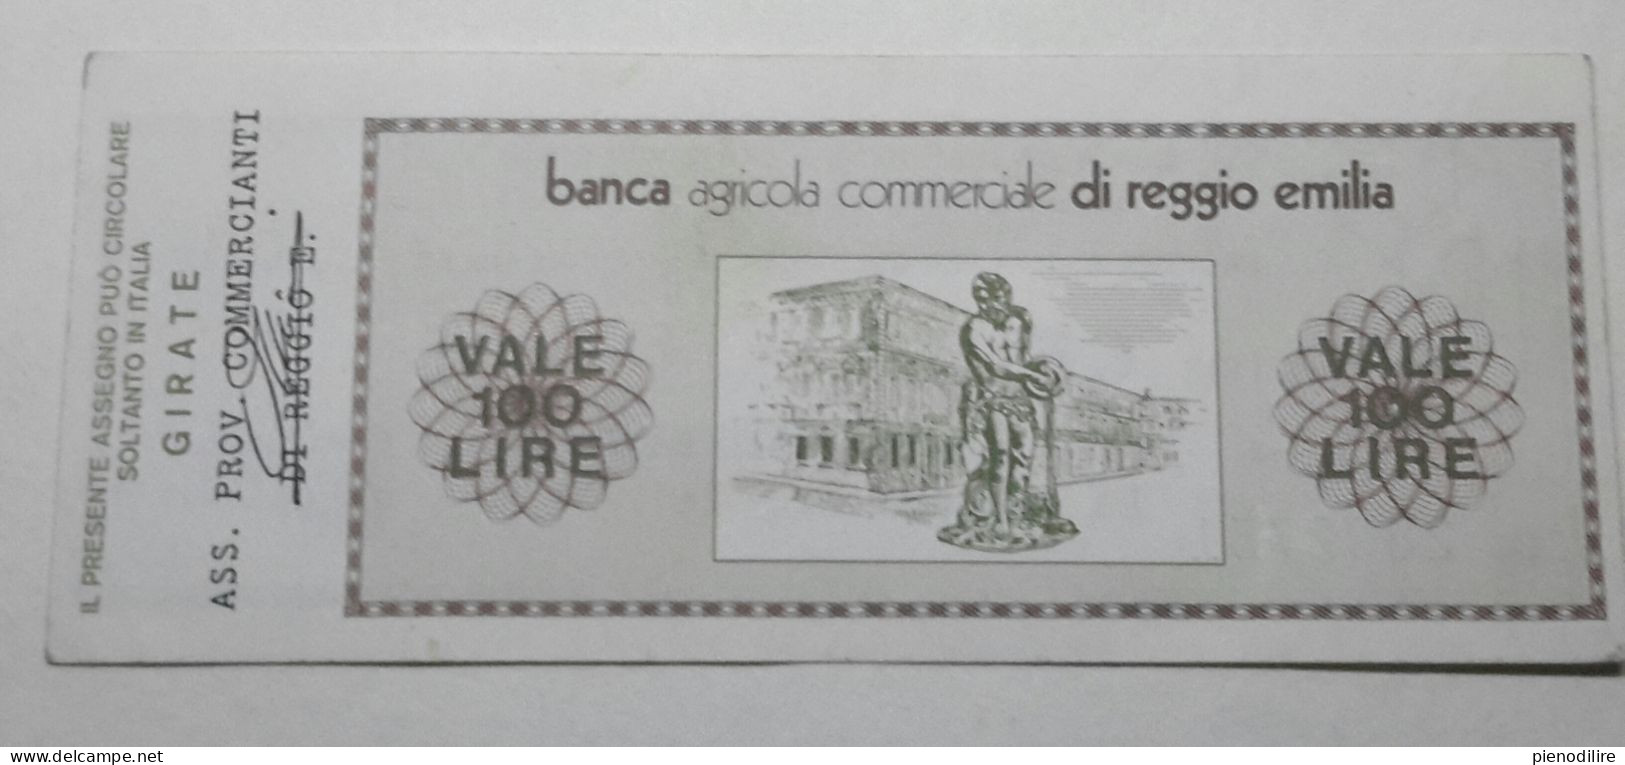 100 LIRE 7.10.1977 BANCA AGRICOLA COMMERCIALE REGGIO EMILIA (A.46) - [10] Checks And Mini-checks